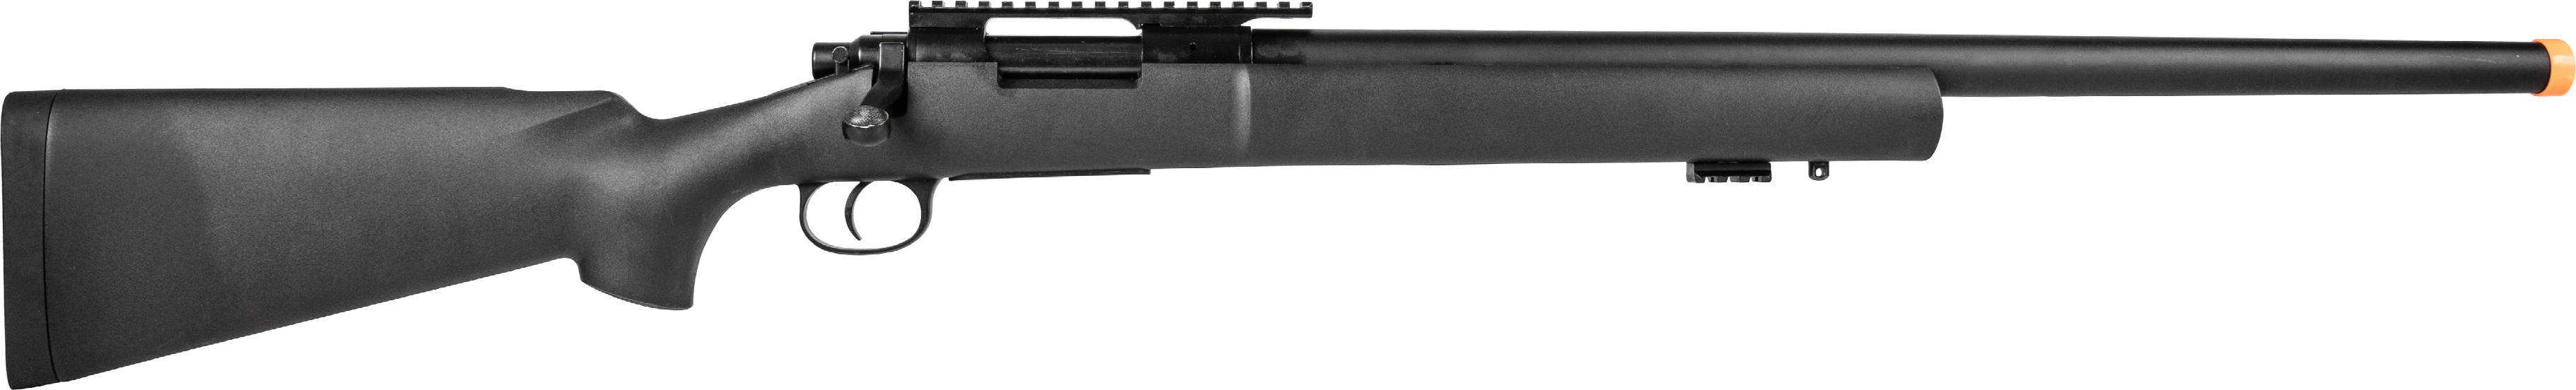 Rifle Sniper Airsoft M24 Storm Mola 6mm em Promoção na Americanas